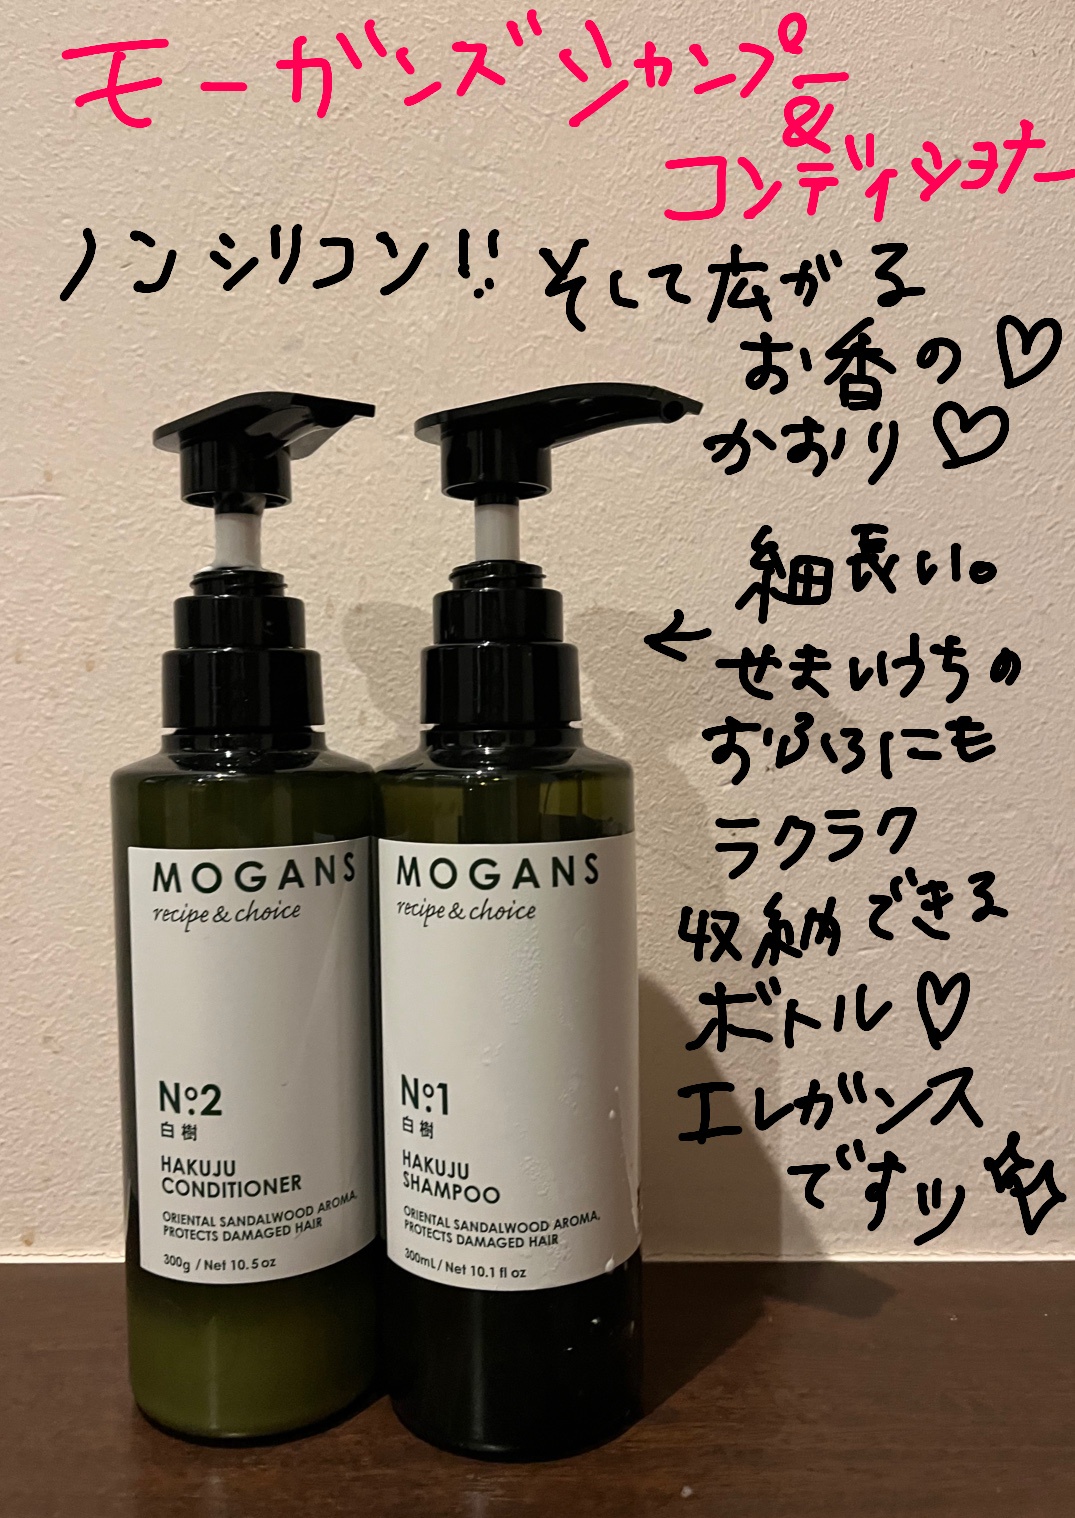 MOGANS(モーガンズ) / ノンシリコン アミノ酸シャンプー 